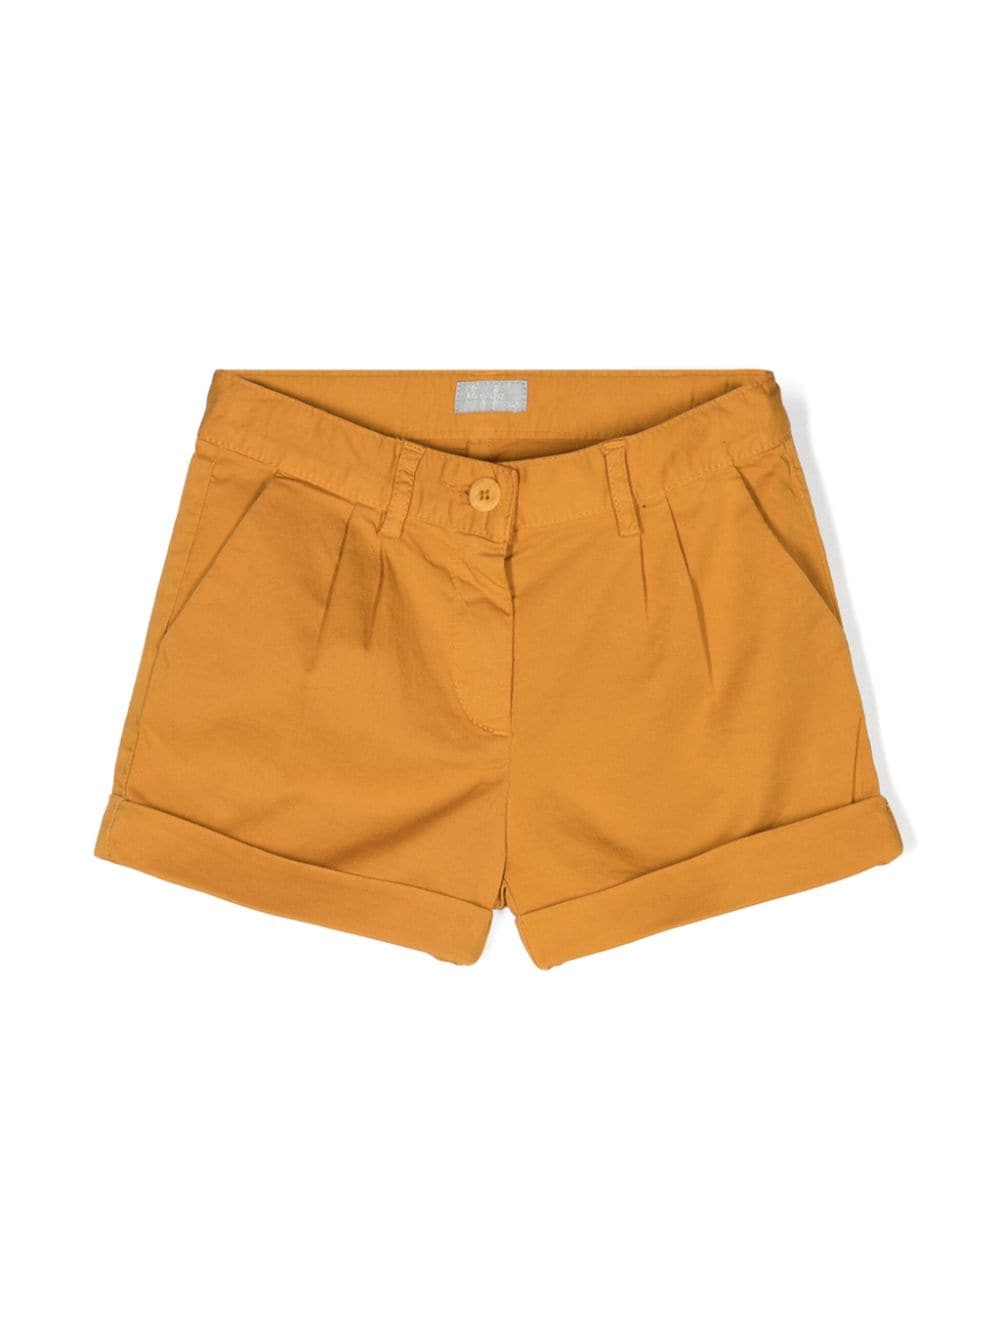 Caramel brown Bermuda shorts for girls